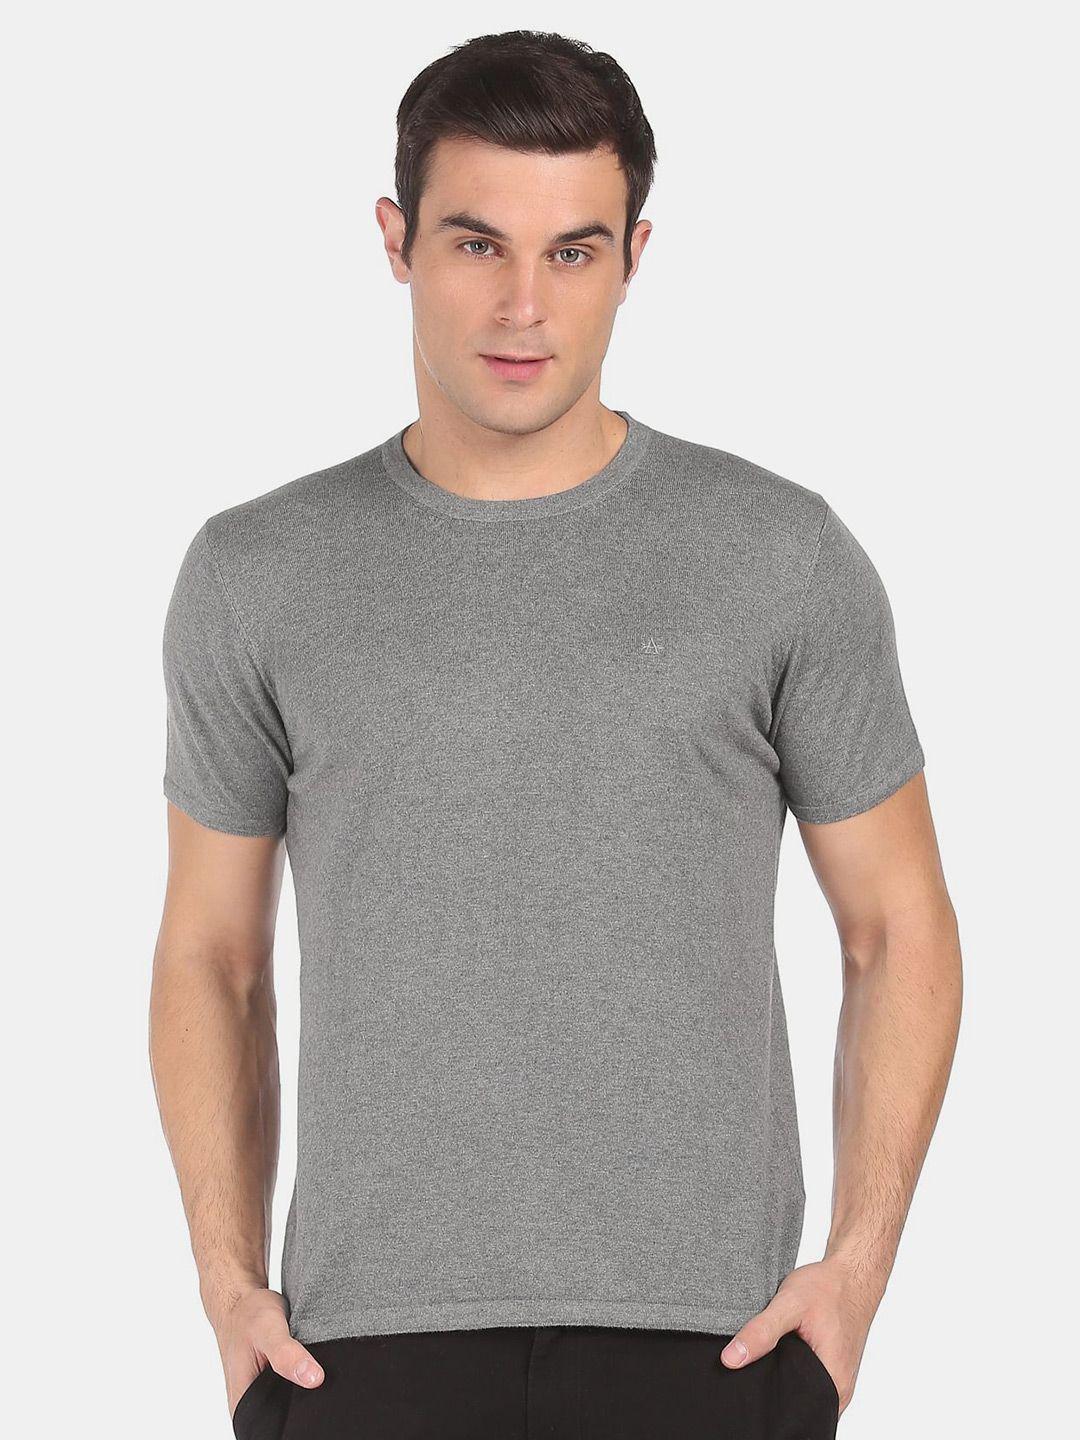 arrow men grey solid t-shirt